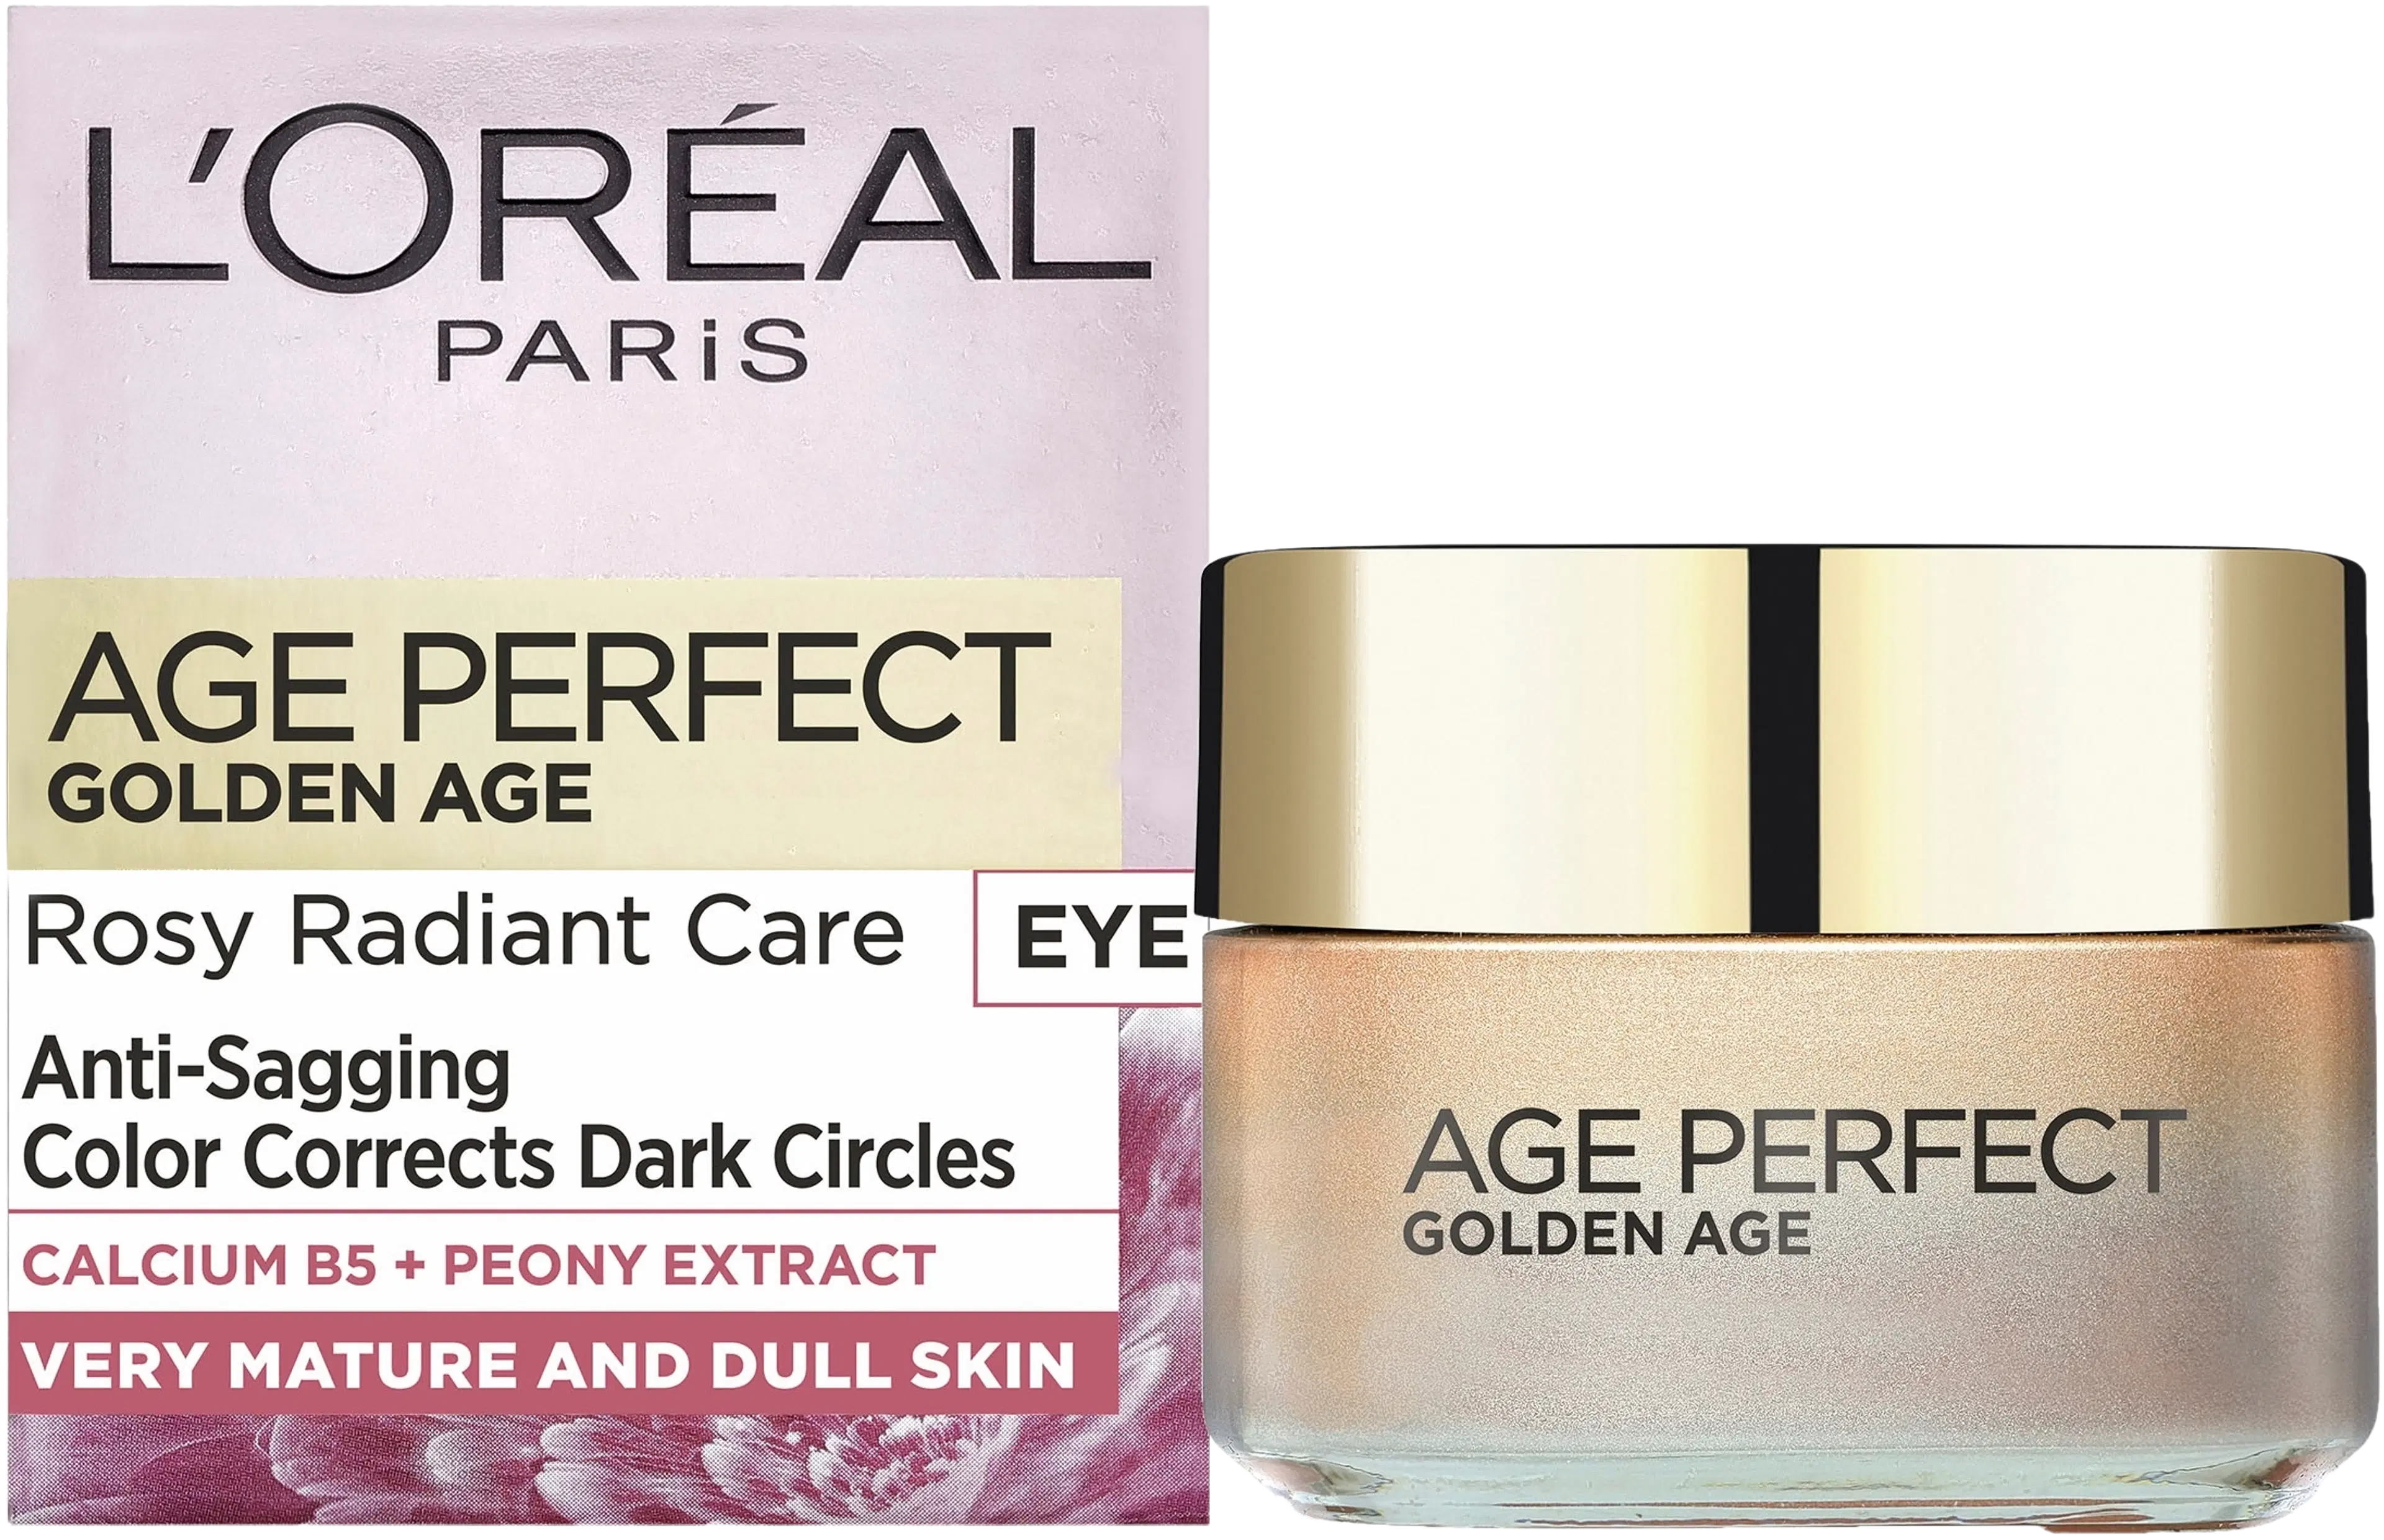 L'Oréal Paris Age Perfect Golden Age silmänympärysvoide ikääntyvälle iholle 15ml